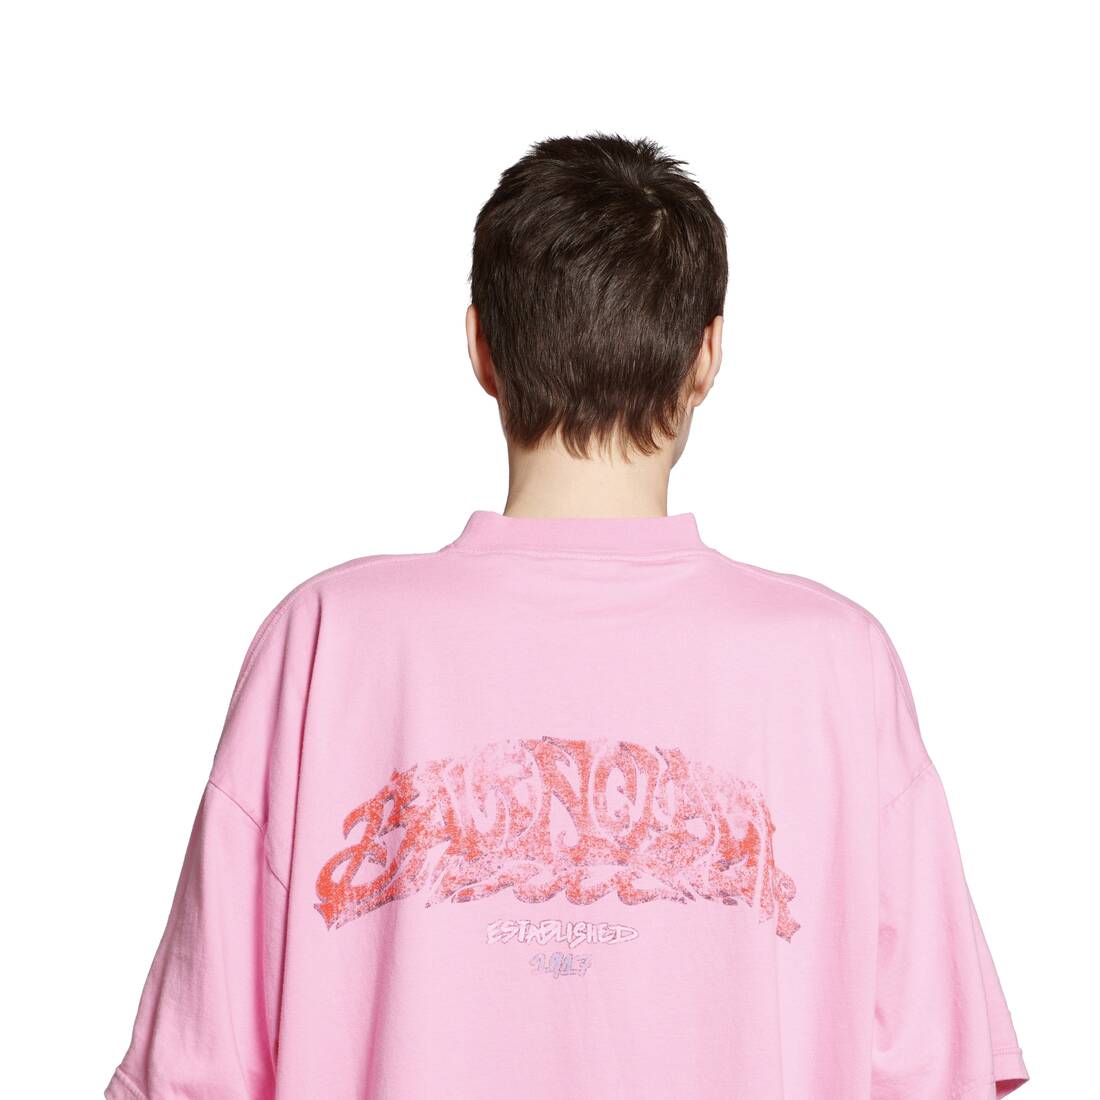 Offshore Tシャツ オーバーサイズ で ピンク